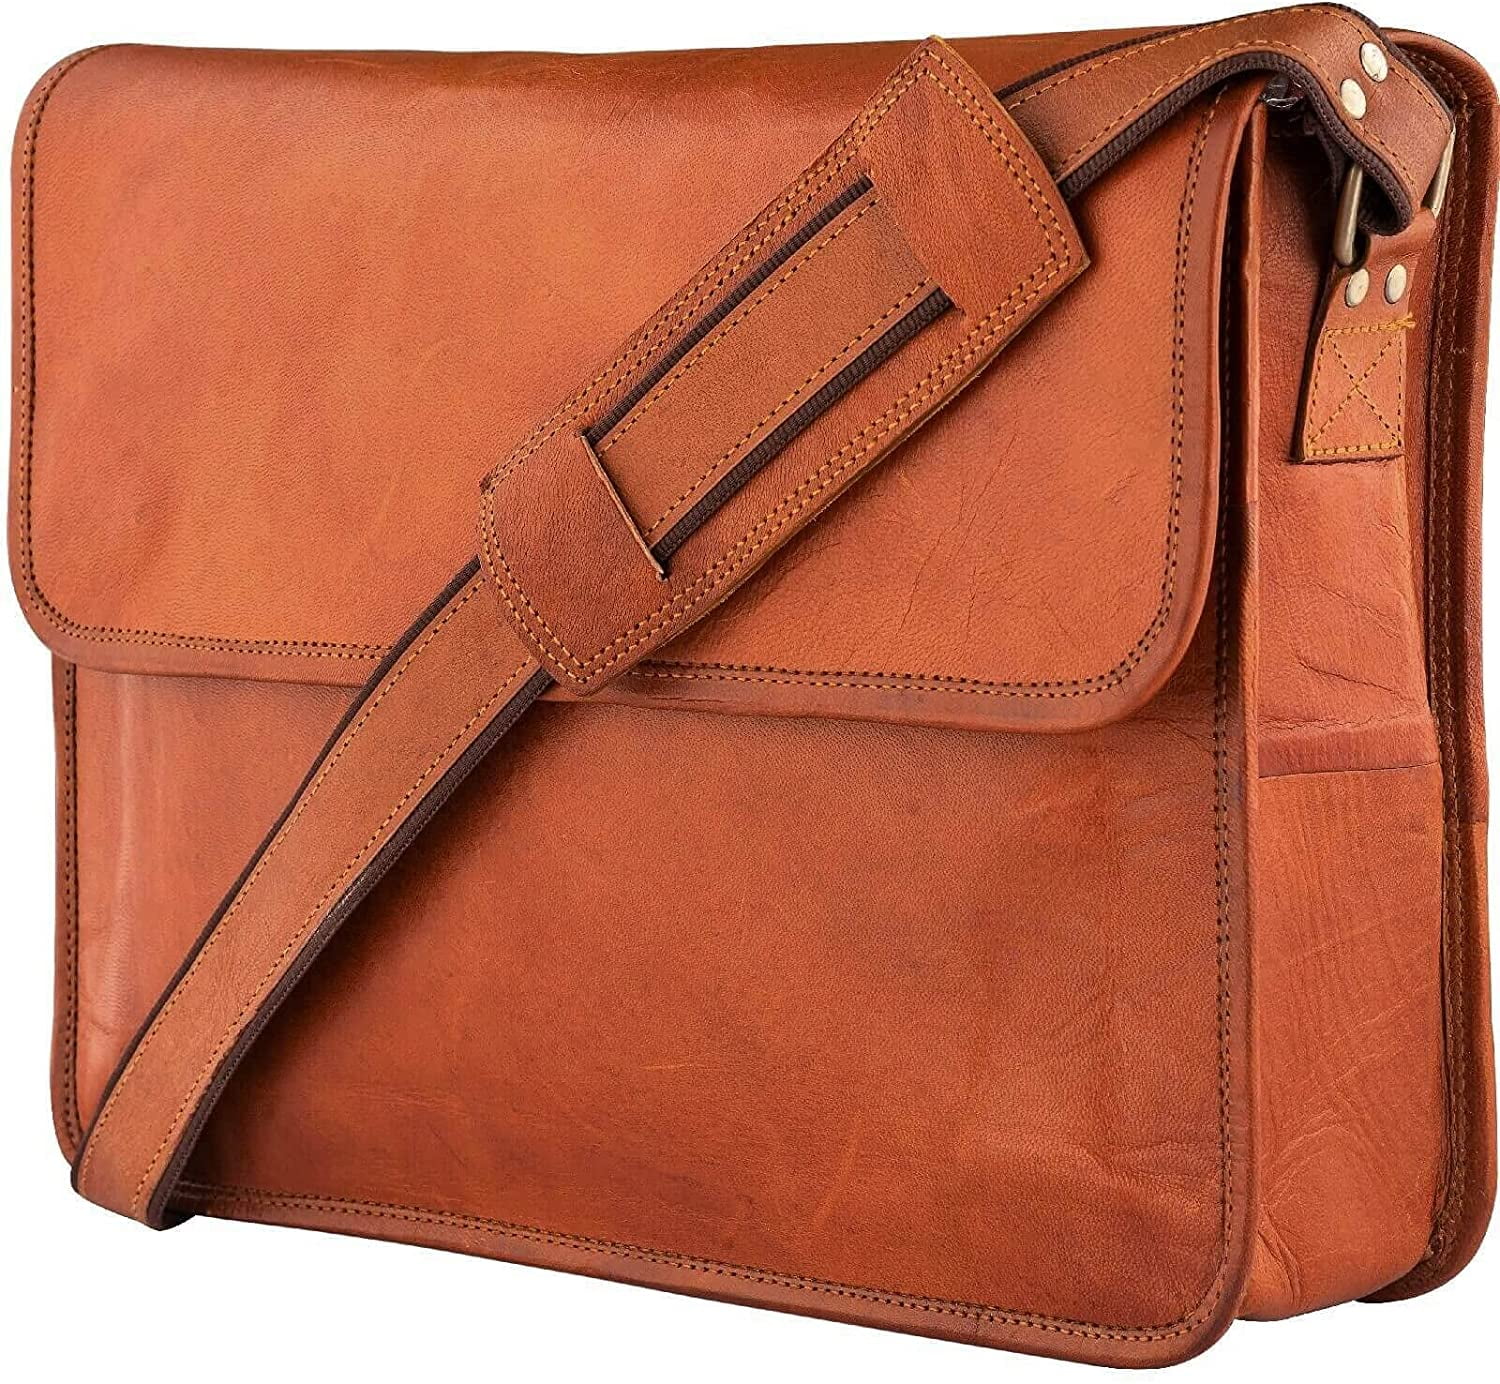 KS 15 inch Leather Laptop Messenger Bag Computer Satchel Briefcase Bag